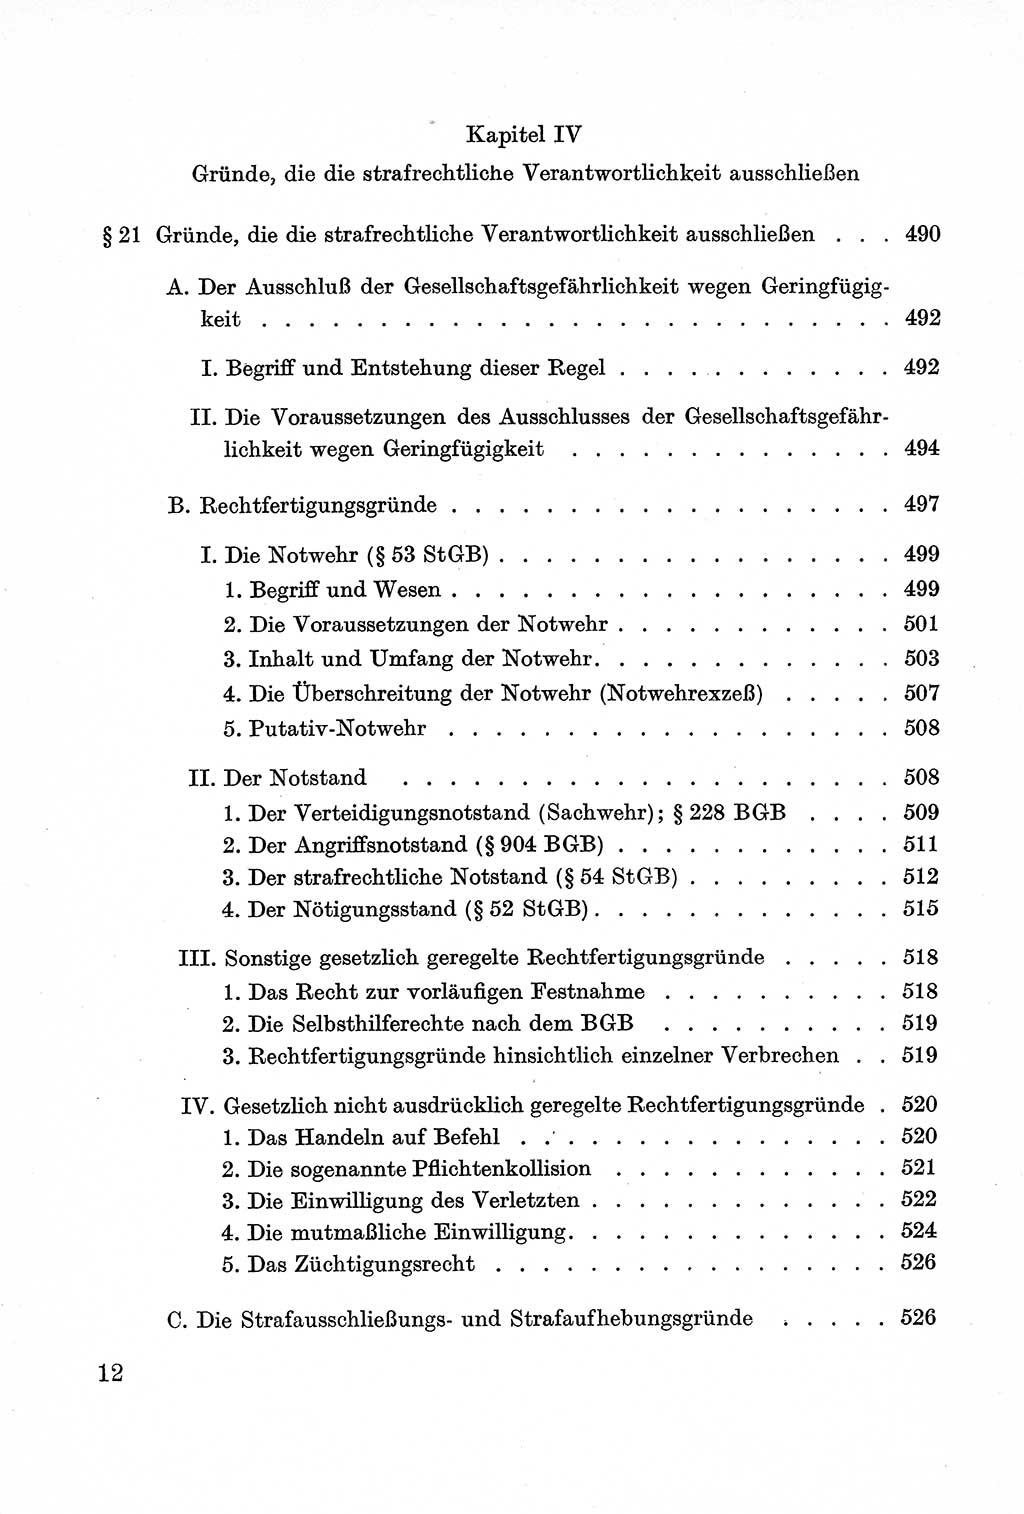 Lehrbuch des Strafrechts der Deutschen Demokratischen Republik (DDR), Allgemeiner Teil 1957, Seite 12 (Lb. Strafr. DDR AT 1957, S. 12)